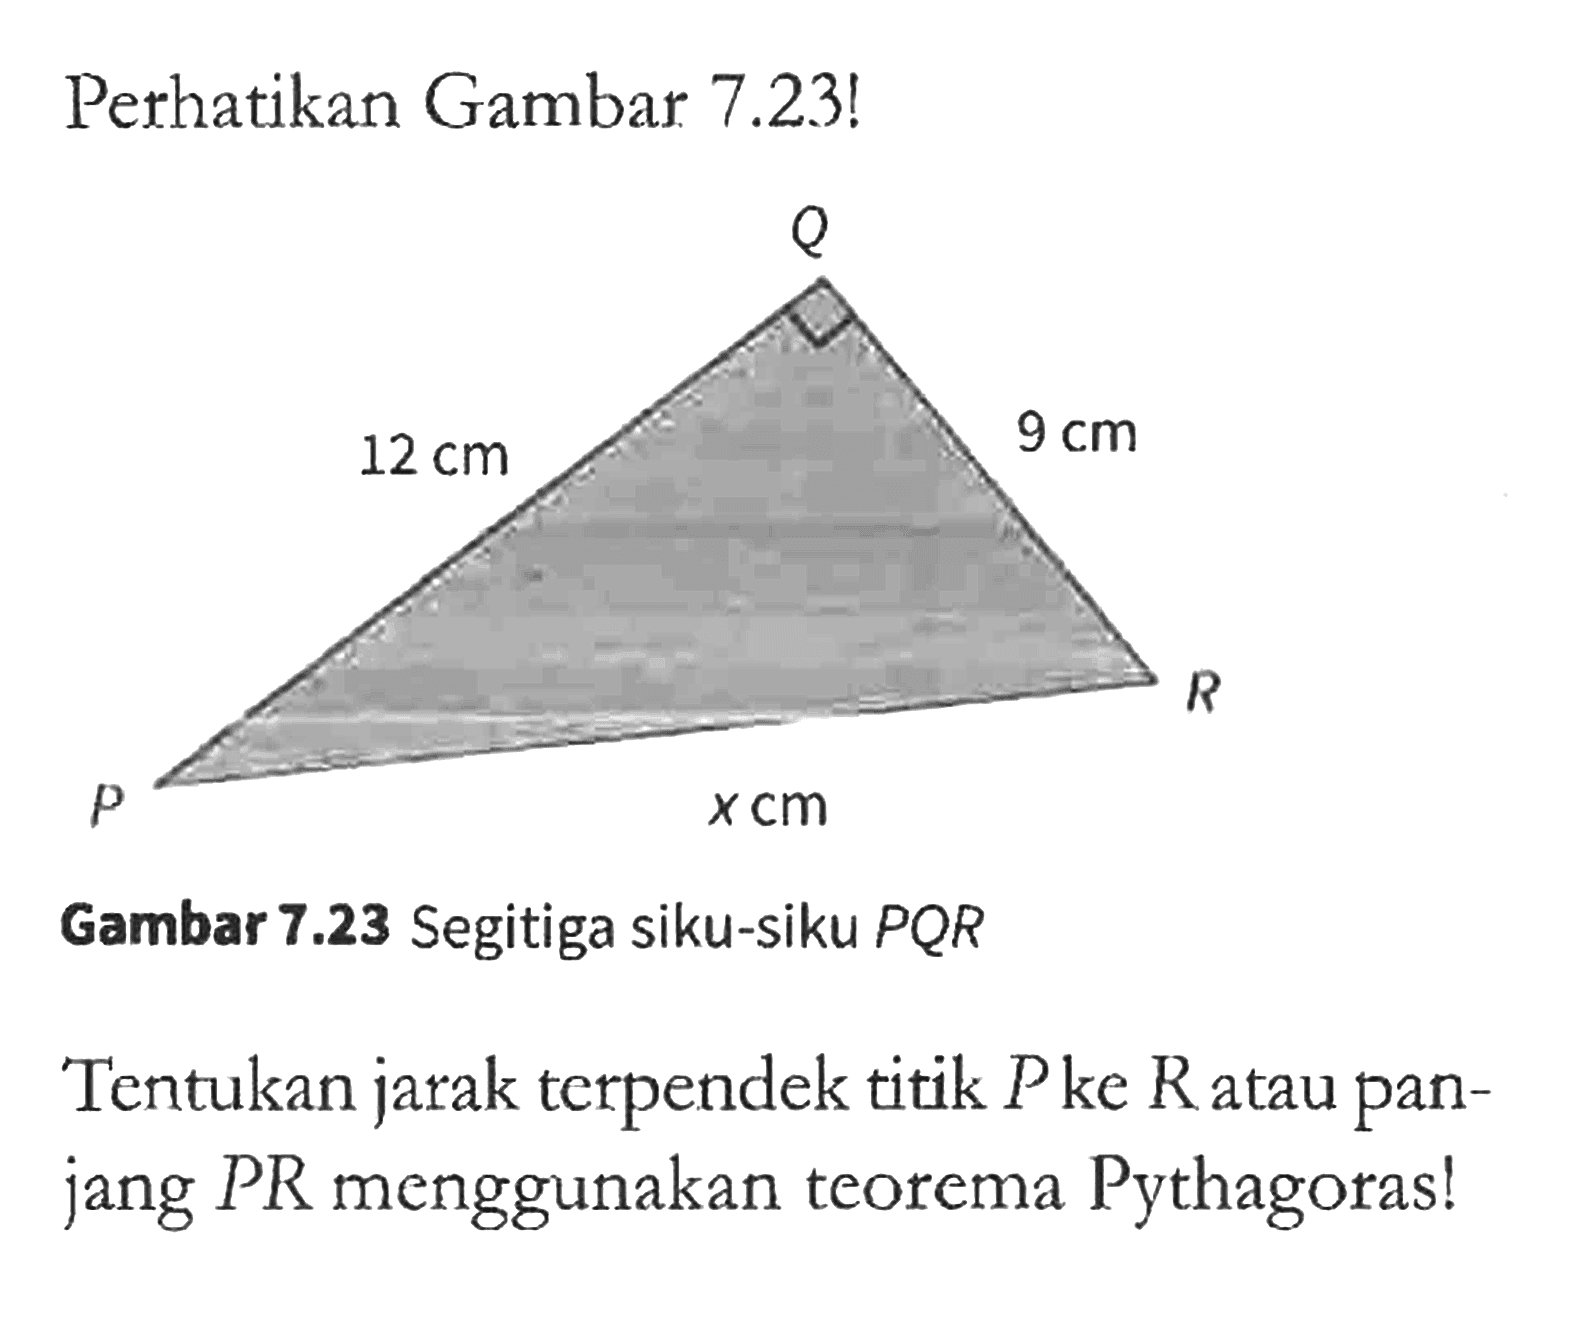 Pethatikan Gambar 7.23! 
Q 12 cm 9 cm R x cm P 
Gambar 7.23 Segitiga siku-siku PQR 
Tentukan jarak terpendek titik P ke R atau panjang PR menggunakan teorema Pythagoras!